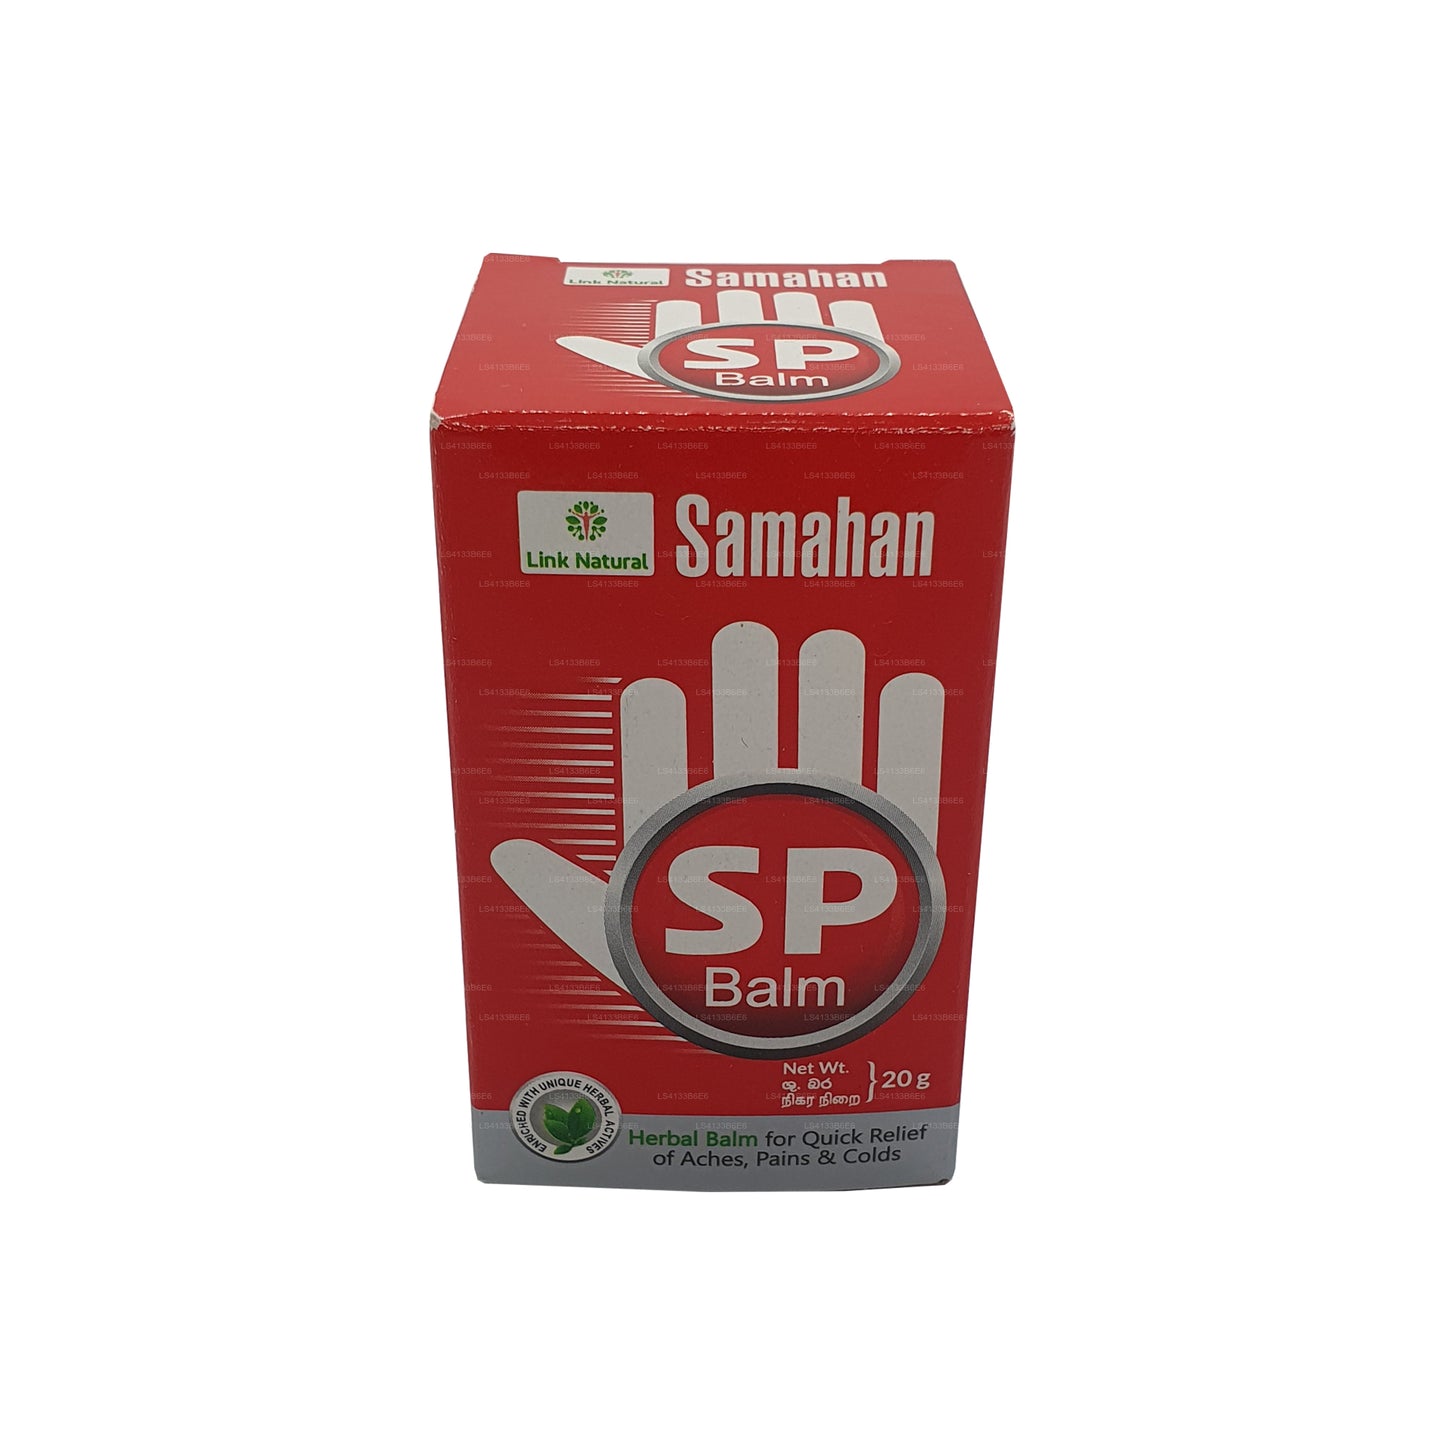 Link Samahan SP Balsam (3g)